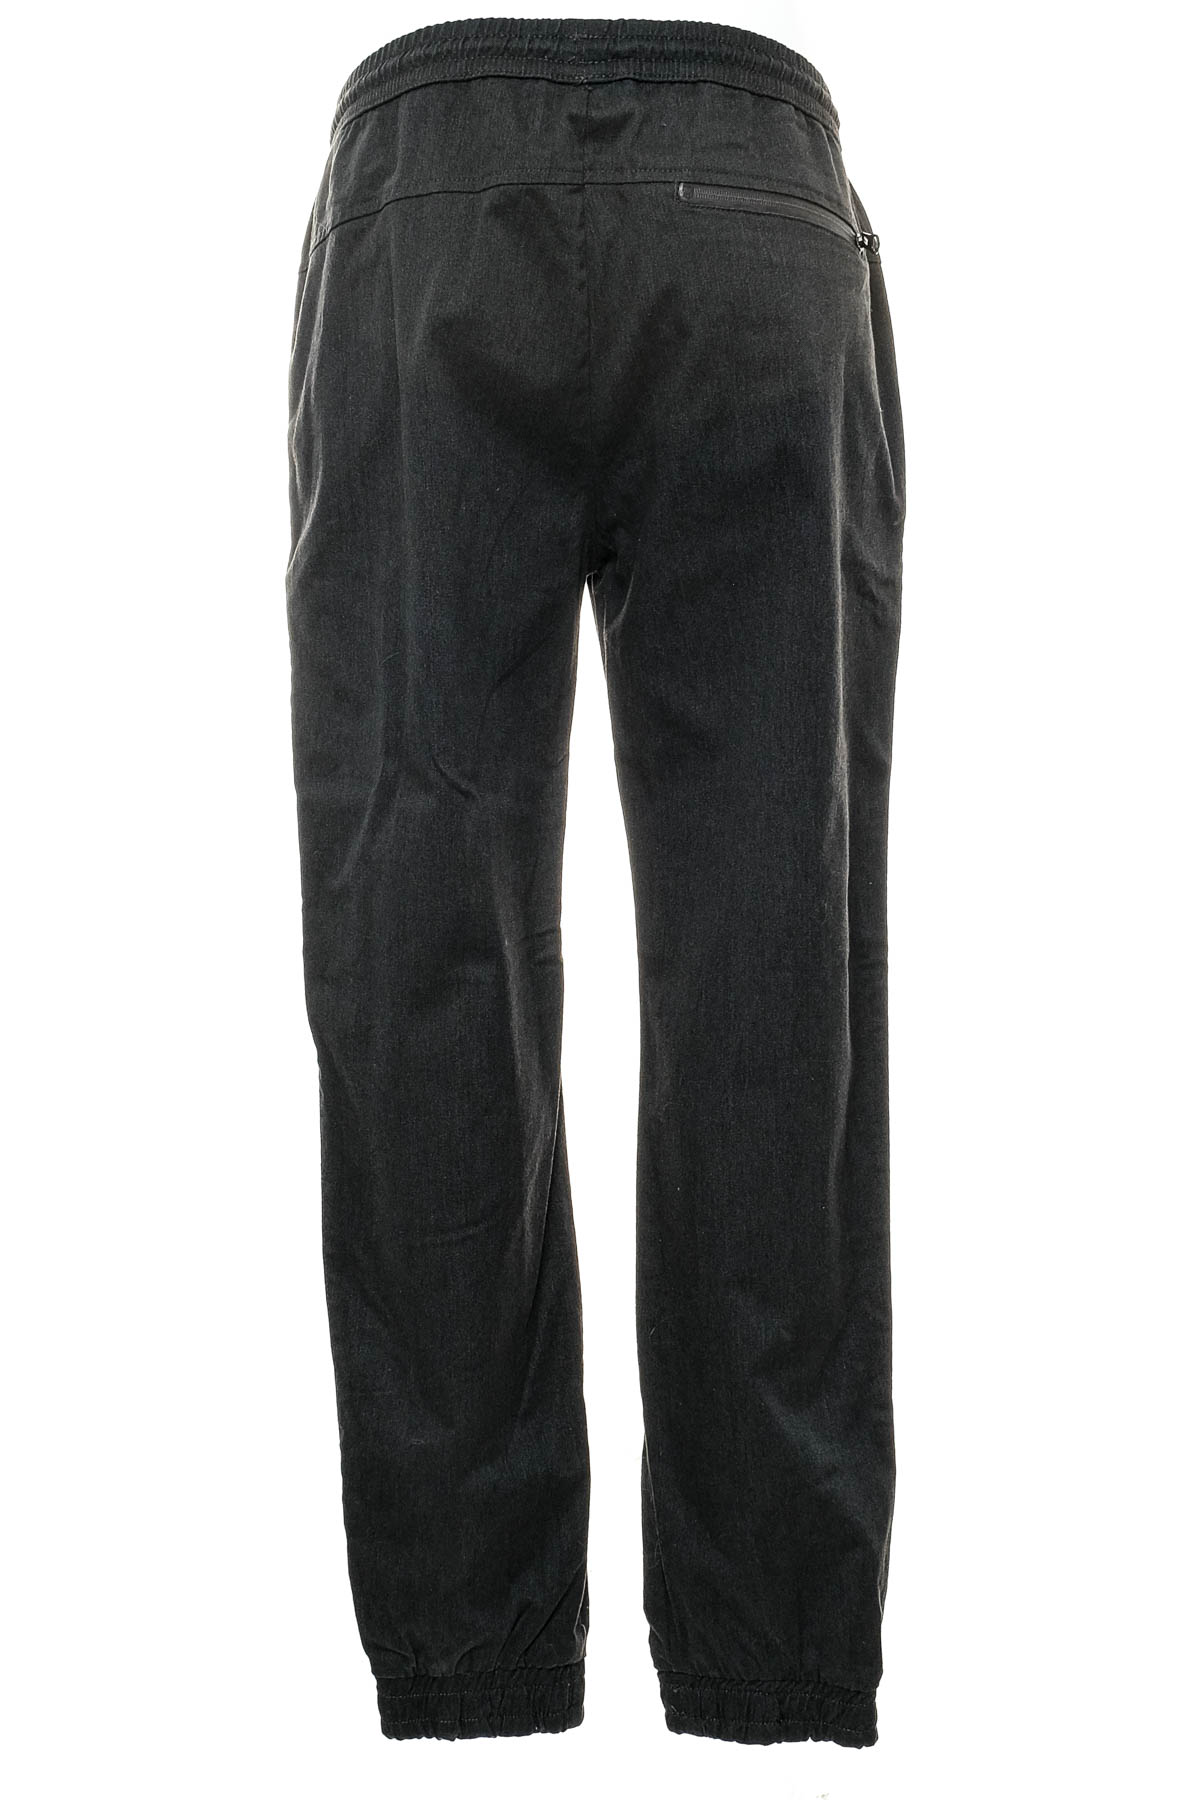 Pantalon pentru bărbați - Denim 1982 - 1